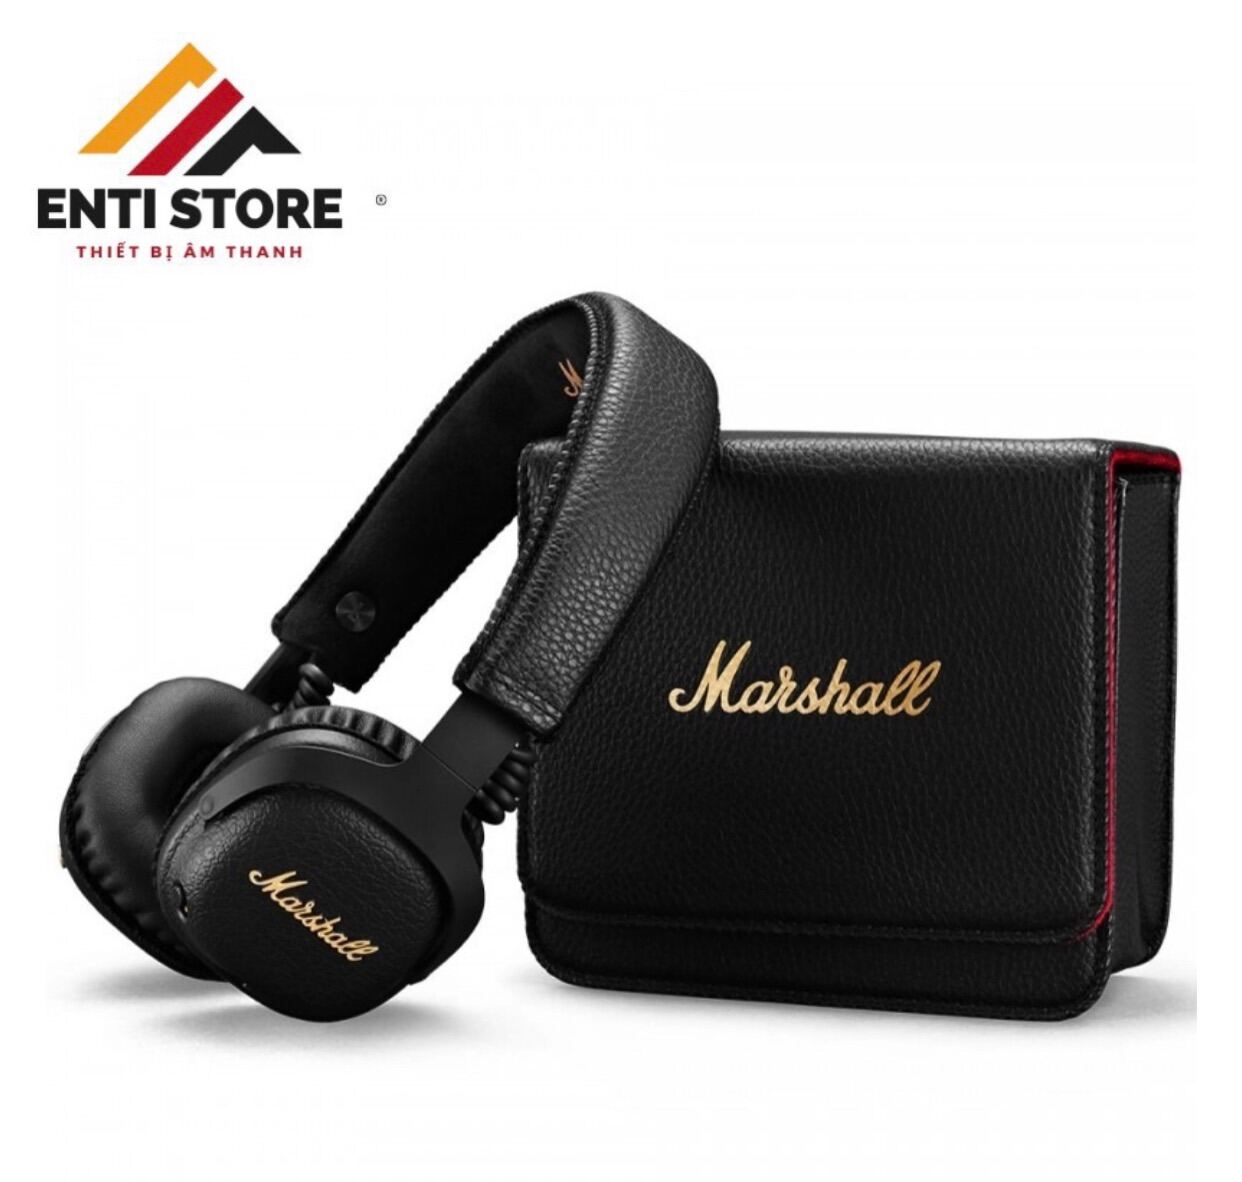 Tai nghe Bluetooth Marshall MID A.N.C - chính hãng 100% - Bảo hành 12 tháng